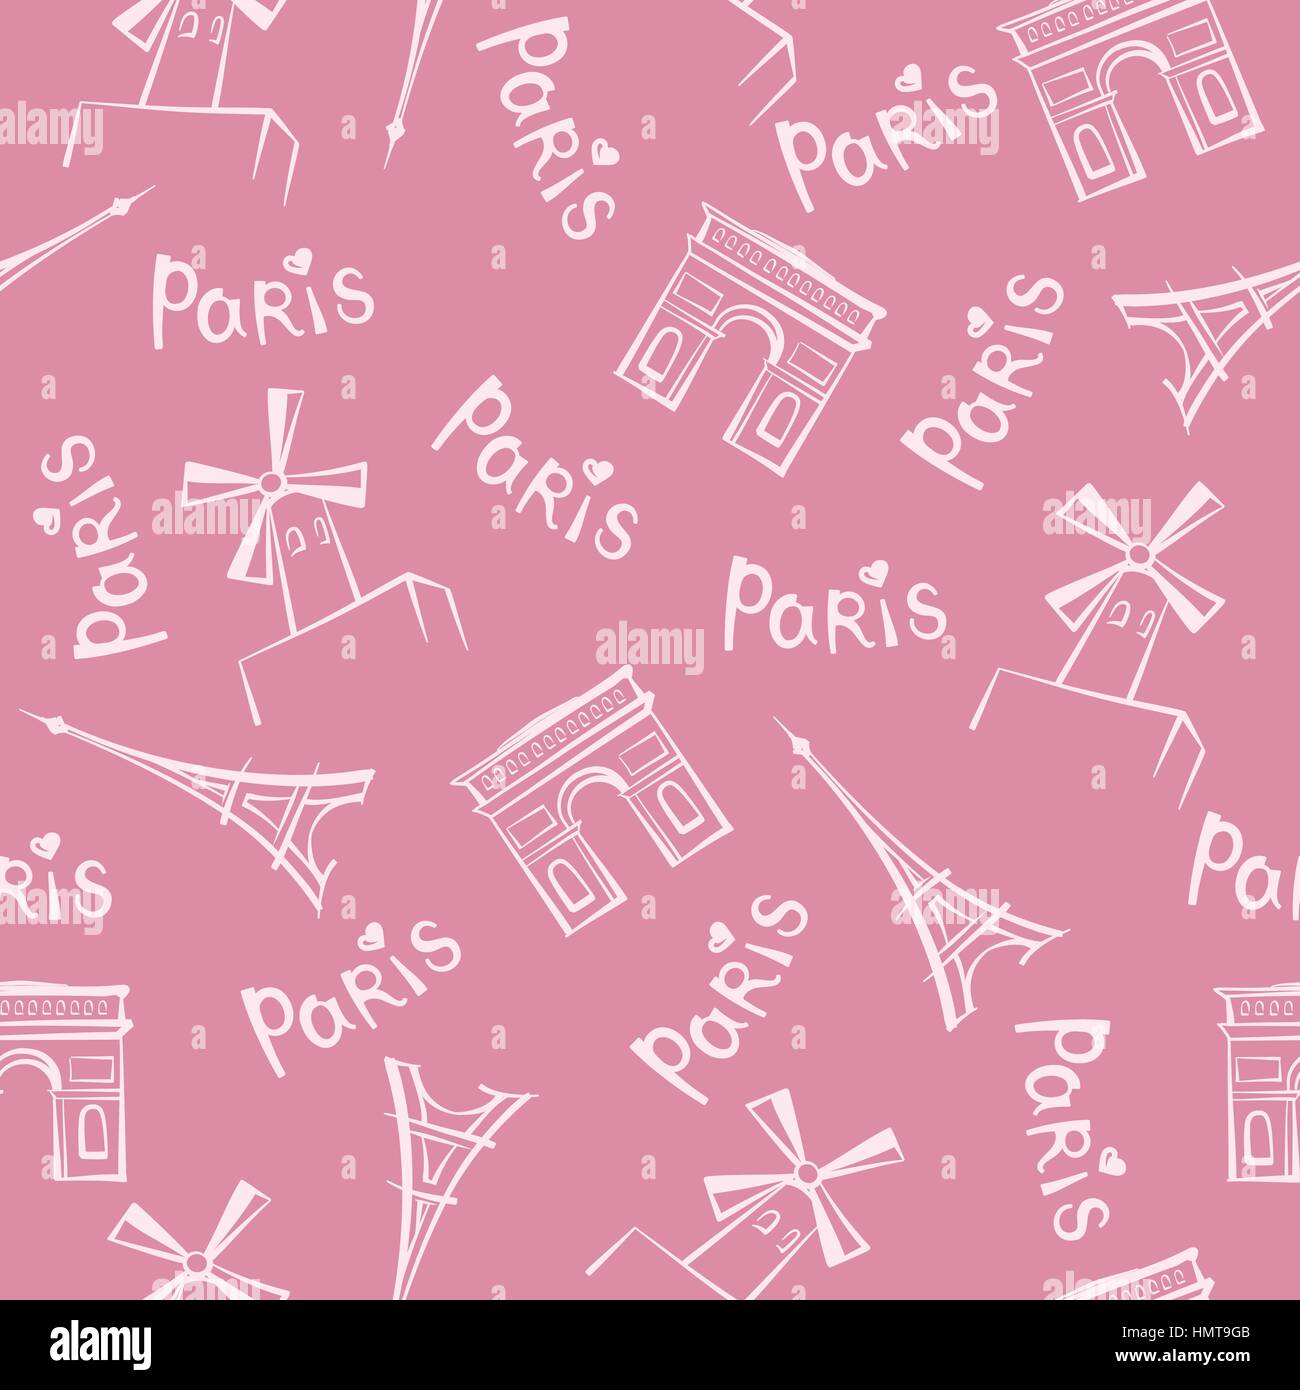 Sites touristiques de la ville de paris et de lettrage manuscrit paris motif transparent background tile france voyage. Illustration de Vecteur